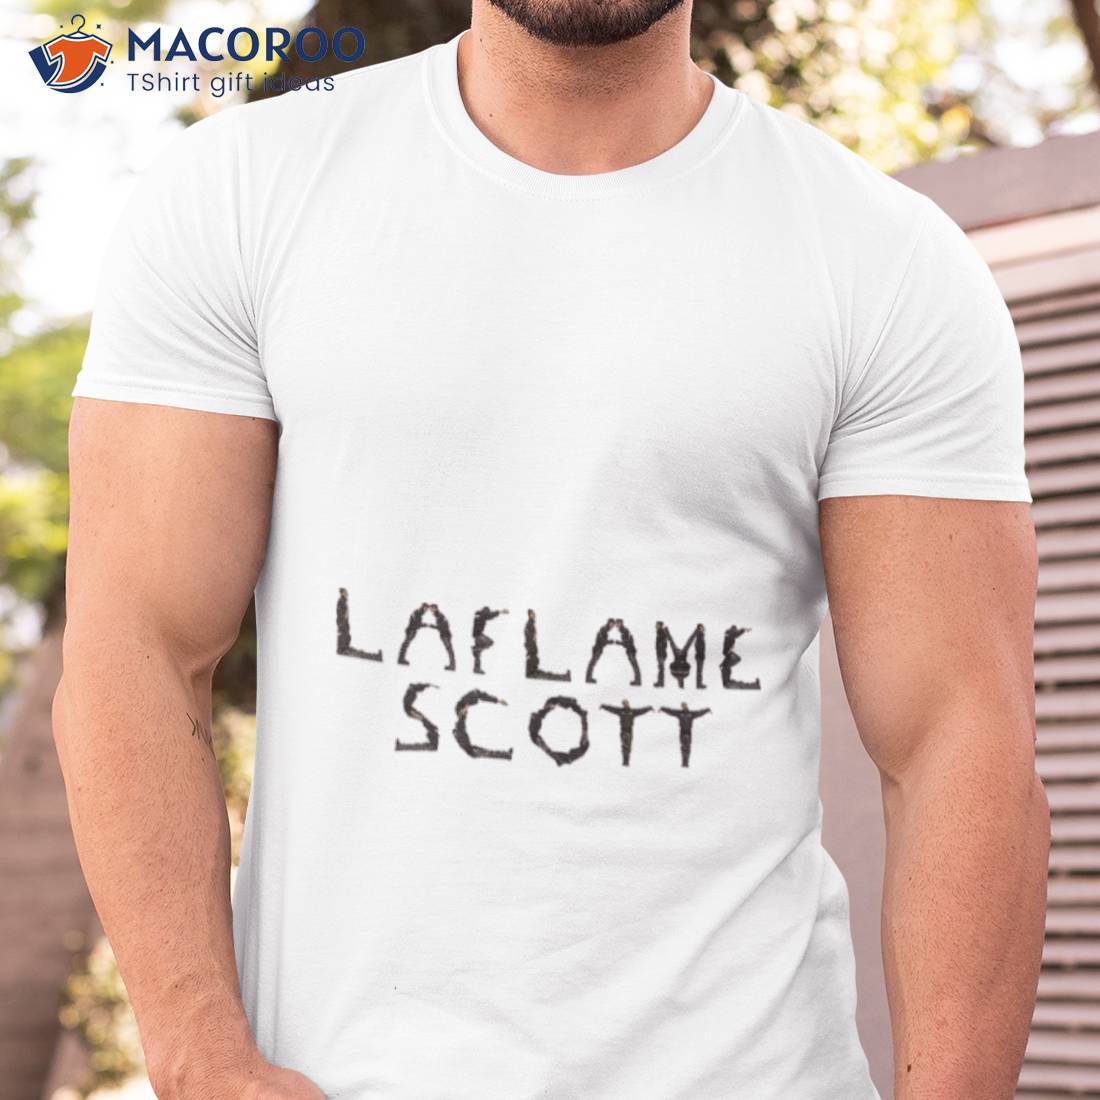 La Flame Scott Travis Scott X Utopia Style Shirt